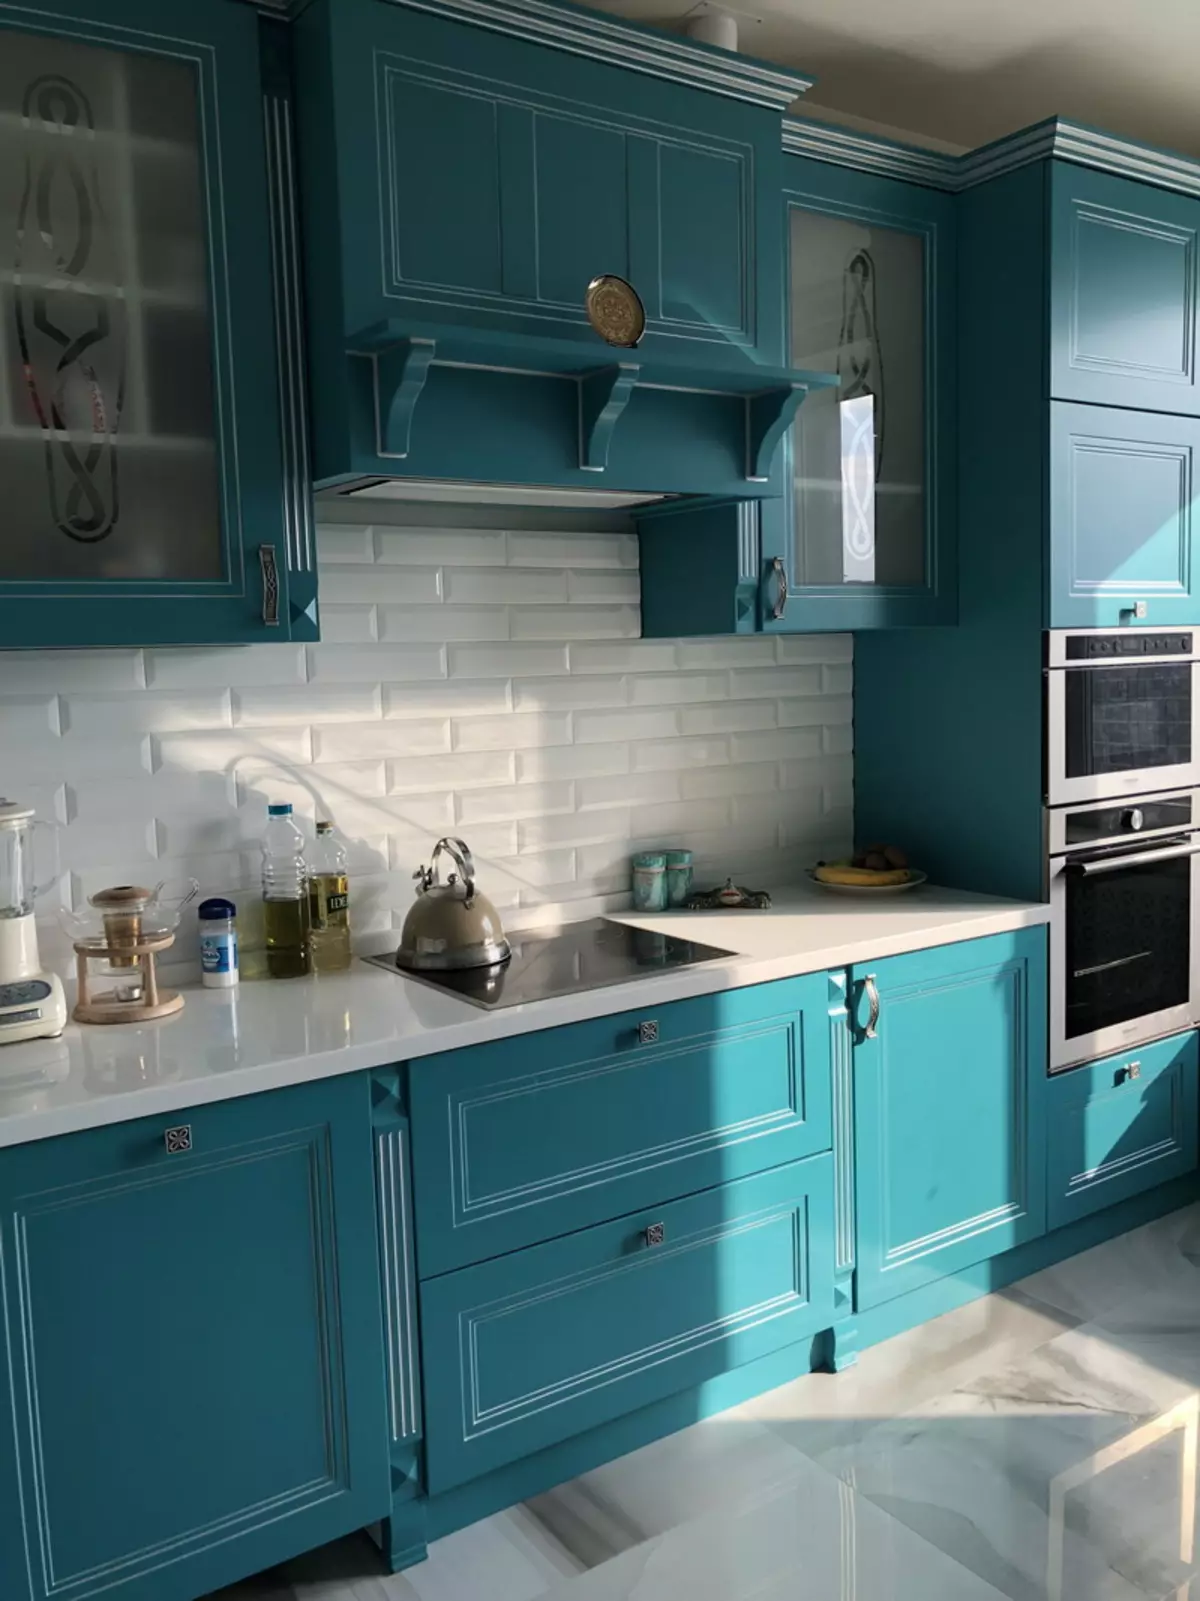 藍廚房（82張照片）：在藍色廚房套裝內部合併哪種顏色？淺藍色和深藍色色調的廚房設計 9555_14